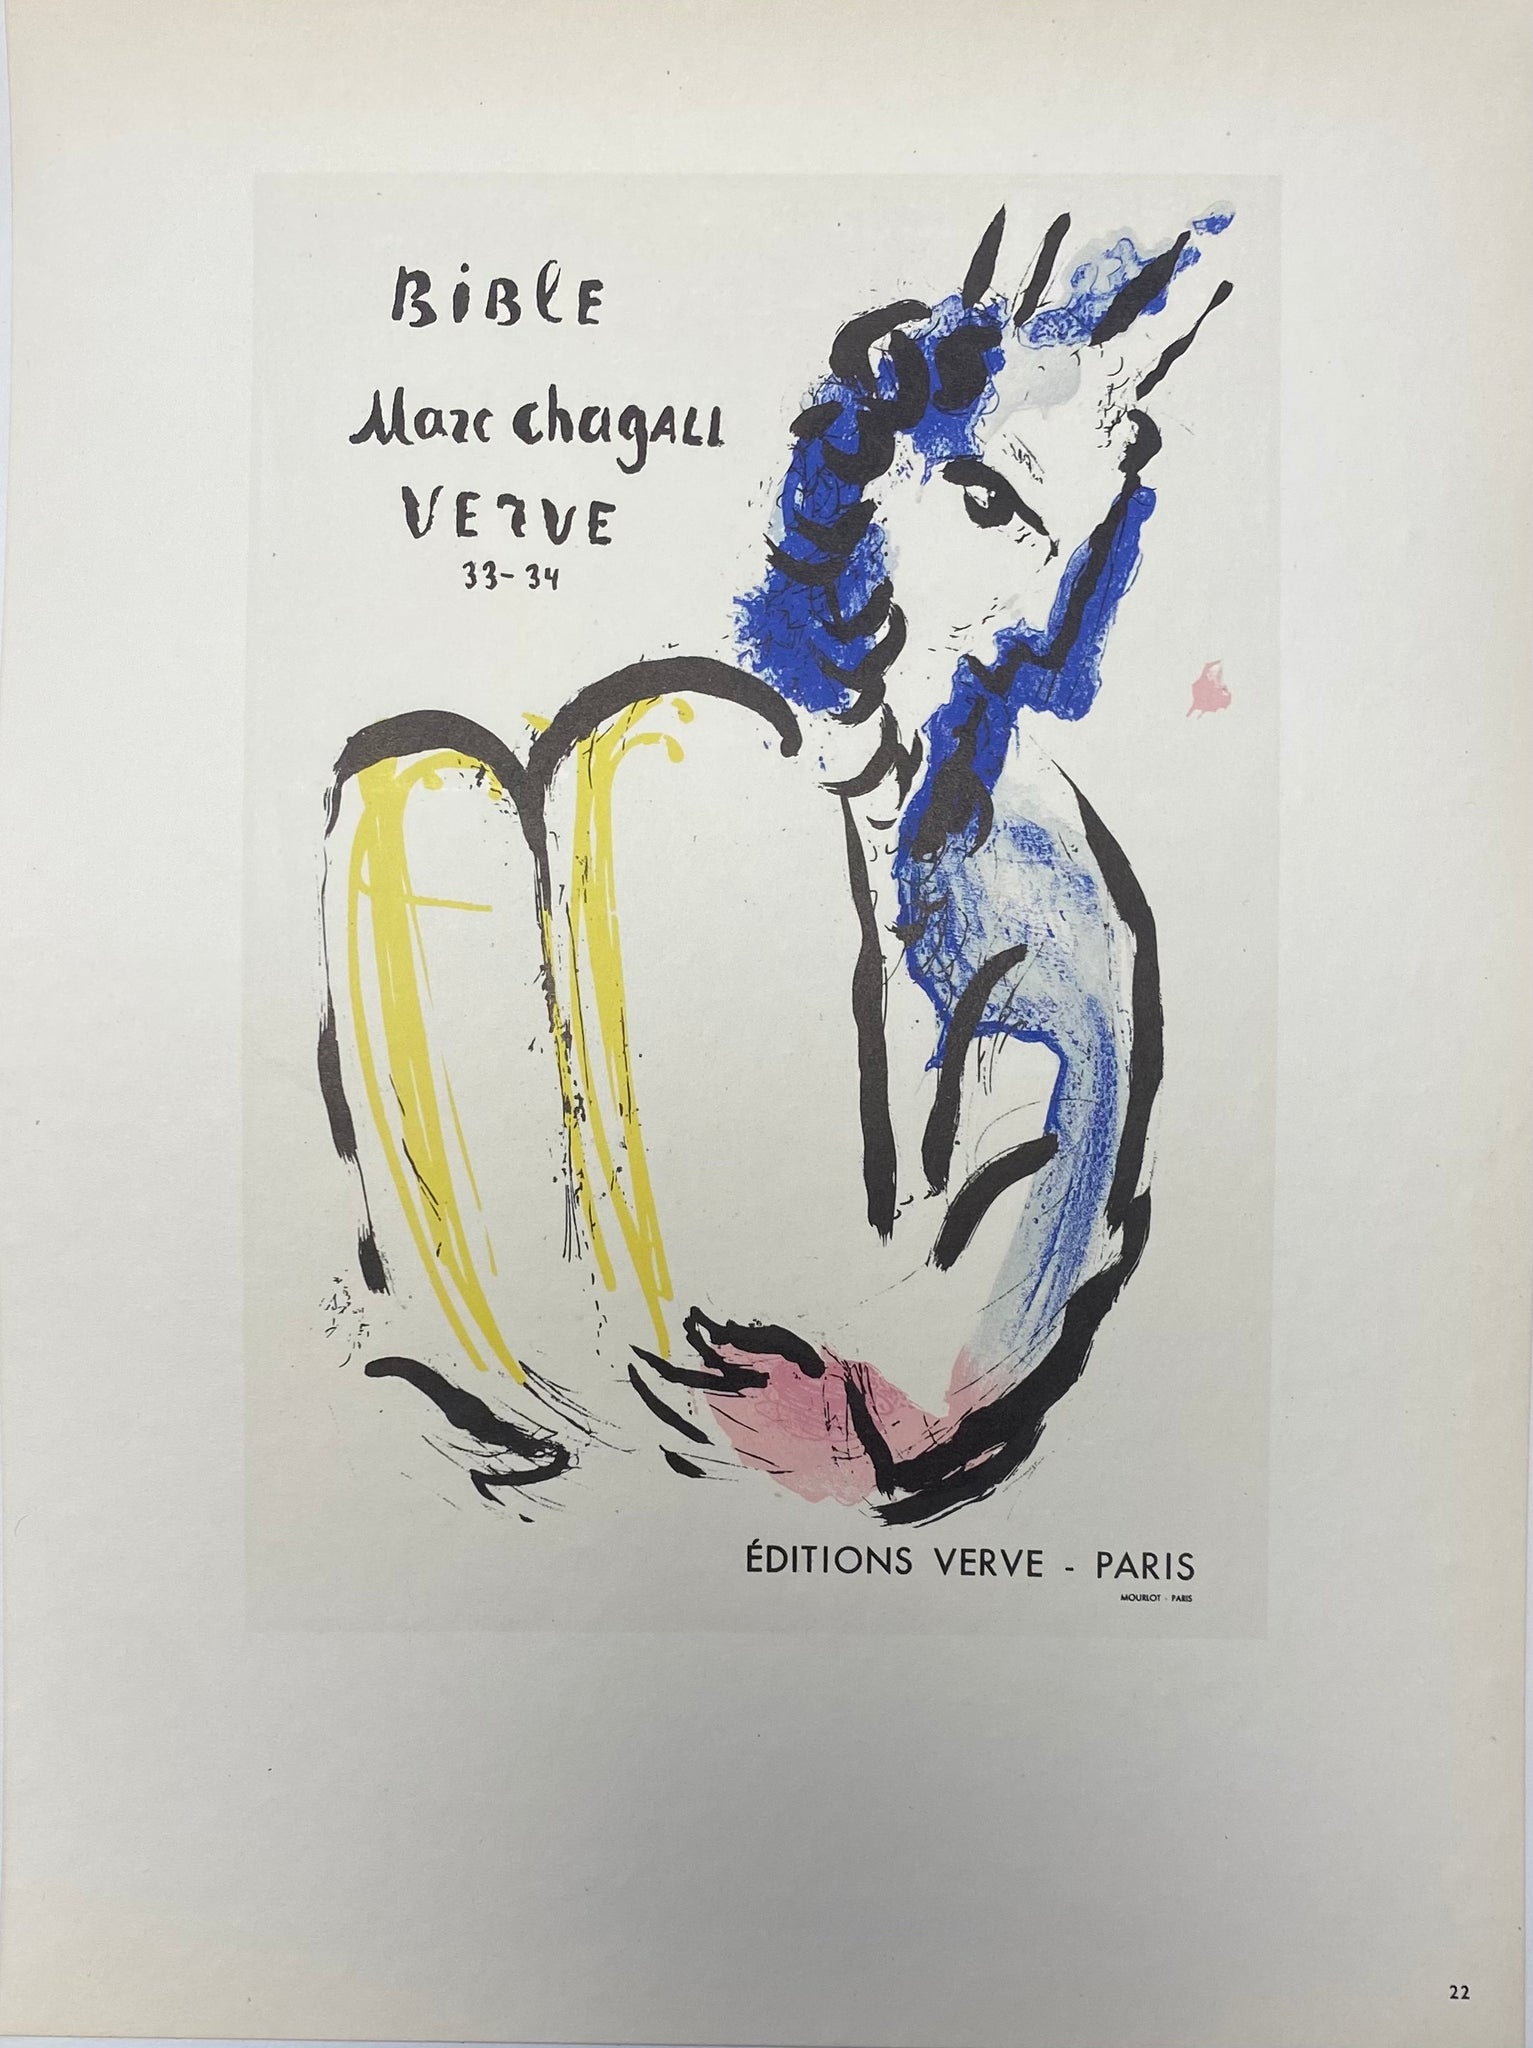 Affiche ancienne la Bible Verve 33-34 par Marc Chagall, 1956